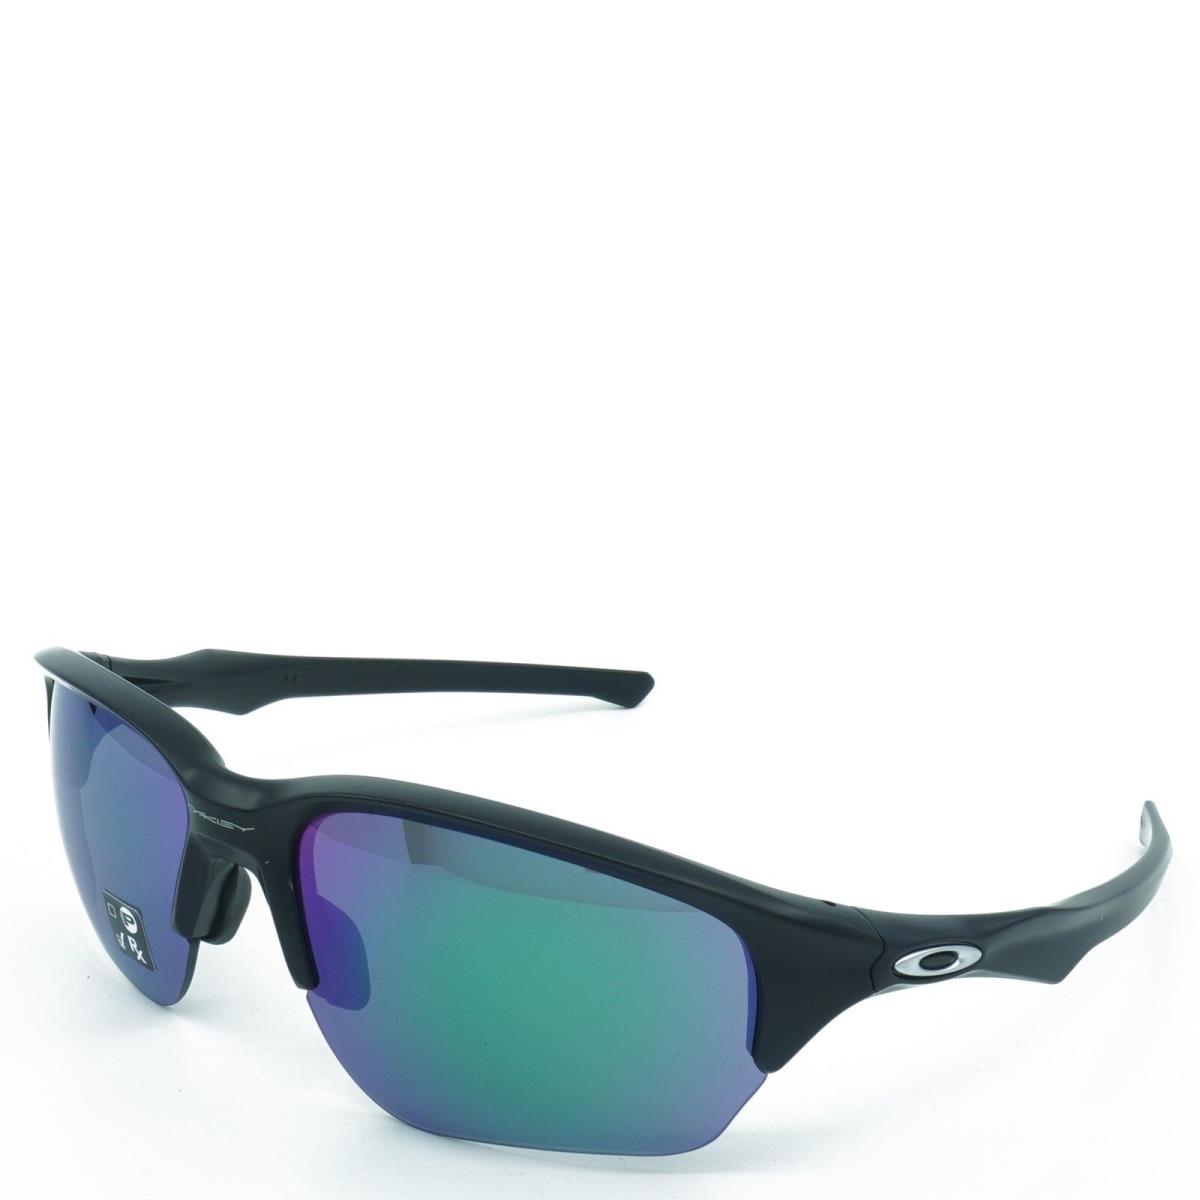 OO9363-16 Mens Oakley Flak Beta Sunglasses